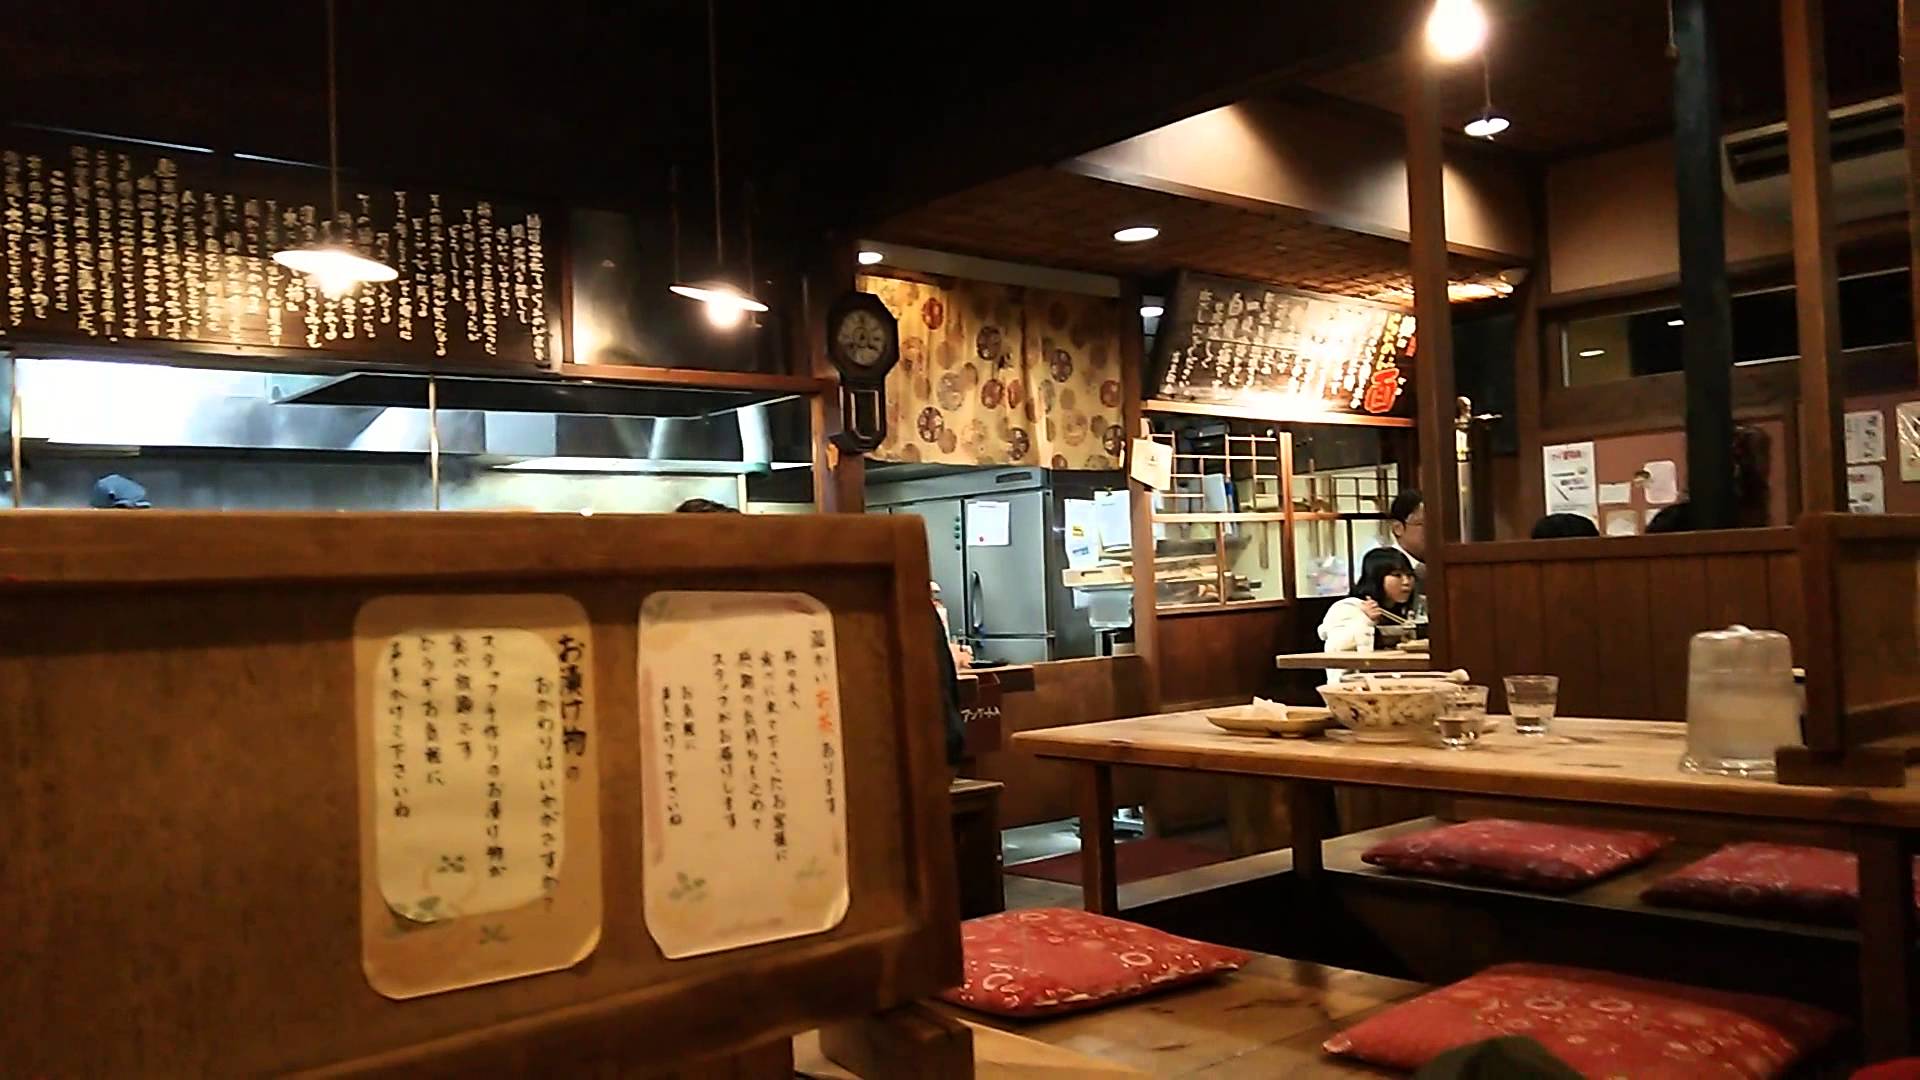 ресторан в японии с мясом человека название